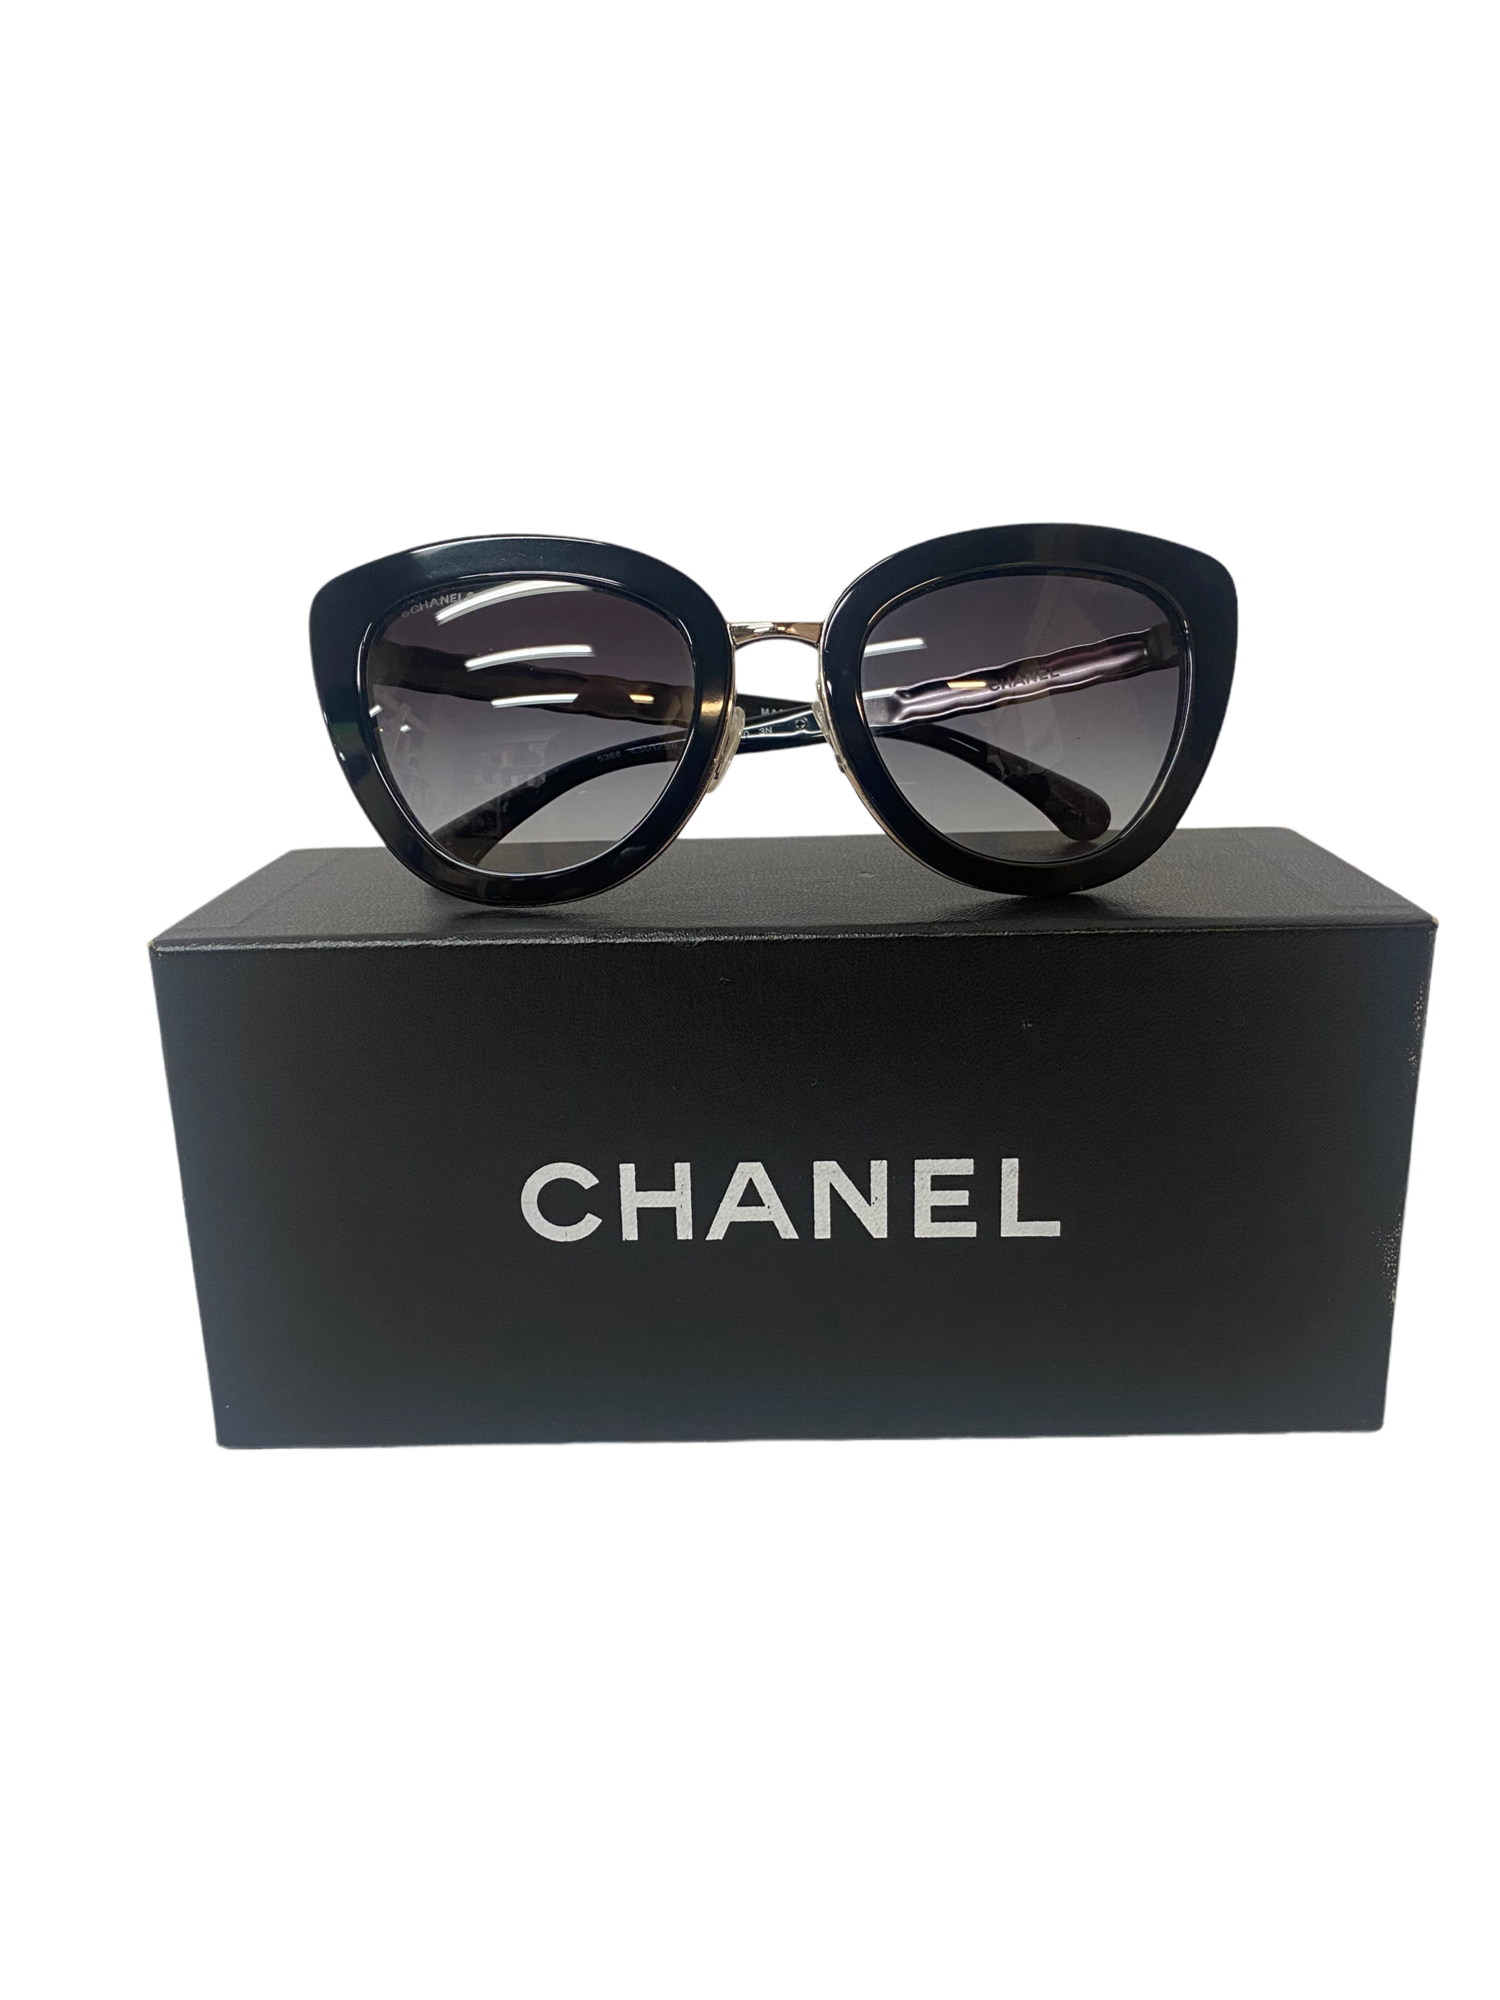 CHANEL, Accessories, Rare Chanel Pearl Cat Eye Sunglasses Black White